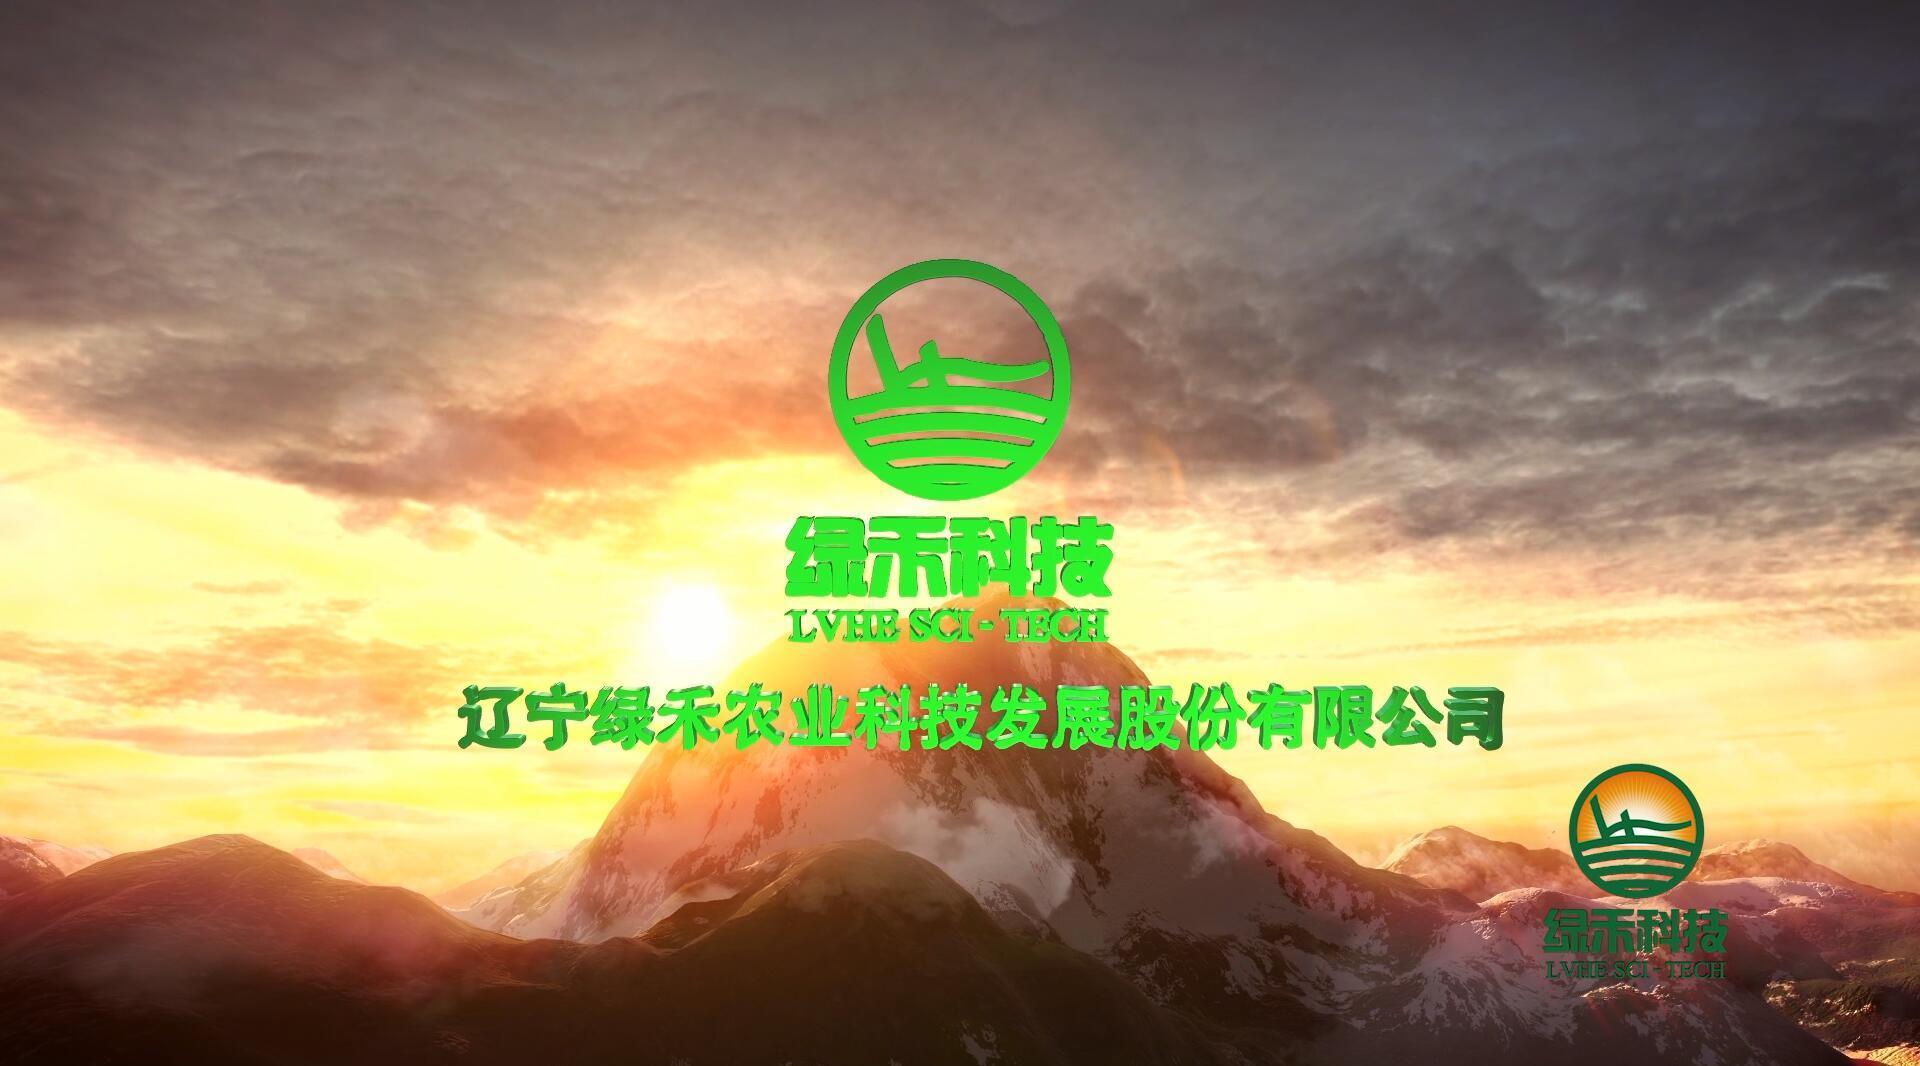 辽宁绿禾农业科技发展股份有限公司宣传片2016版